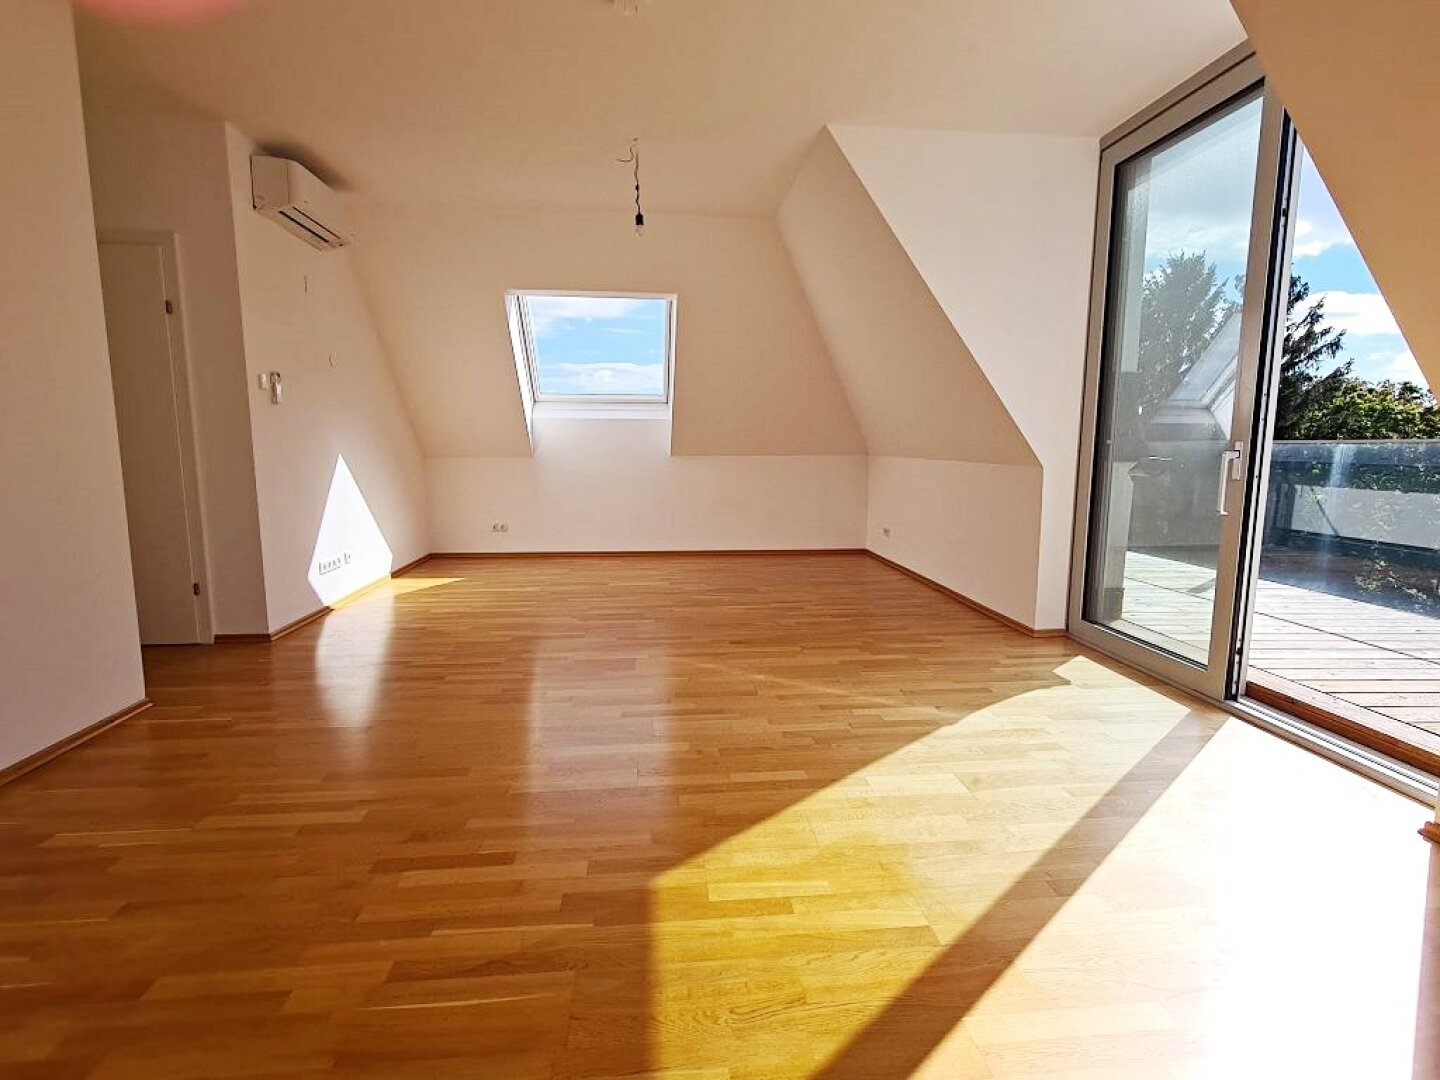 WIENBLICK, GRÜNLAGE, klimatisiertes 104 m2 Dachgeschoß mit 19 m2 Terrasse, 3 Zimmer, Komplettküche, Parketten, Hartäckerstraße